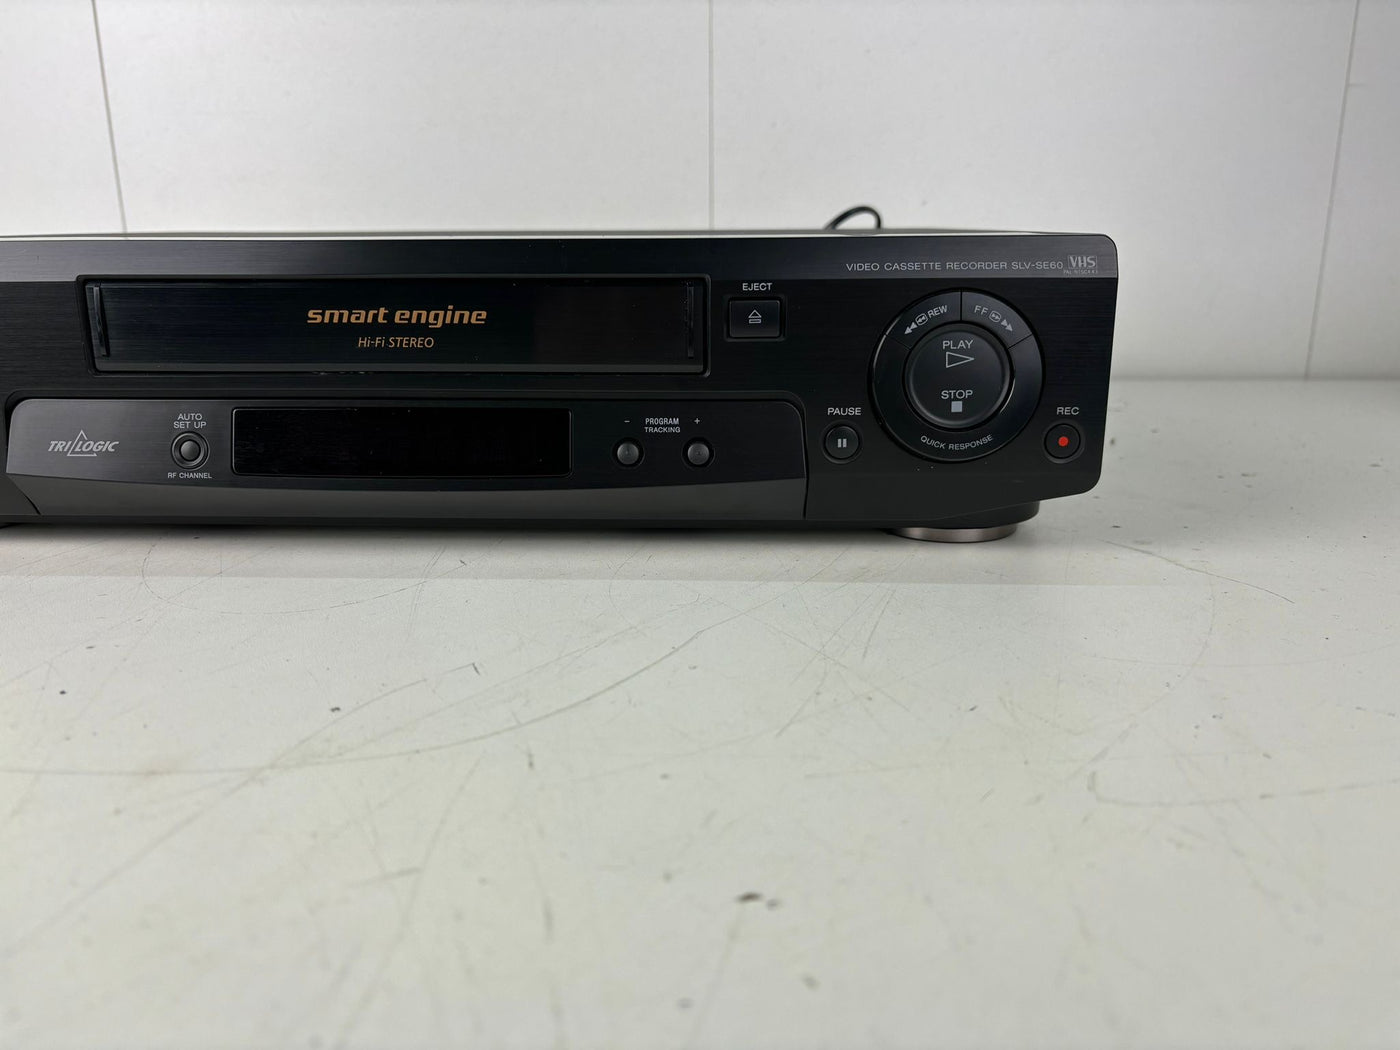 Sony SLV-SE60AE1 VHS Video Cassette Recorder